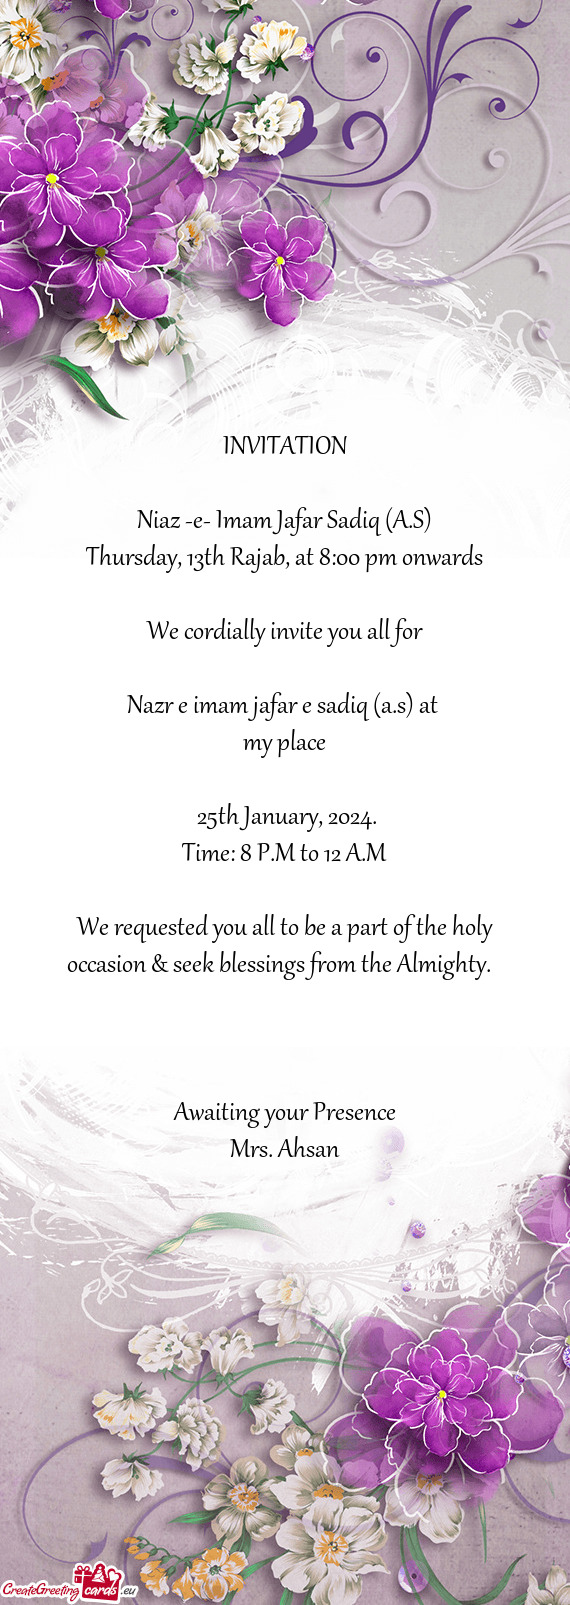 Thursday, 13th Rajab, at 8:00 pm onwards